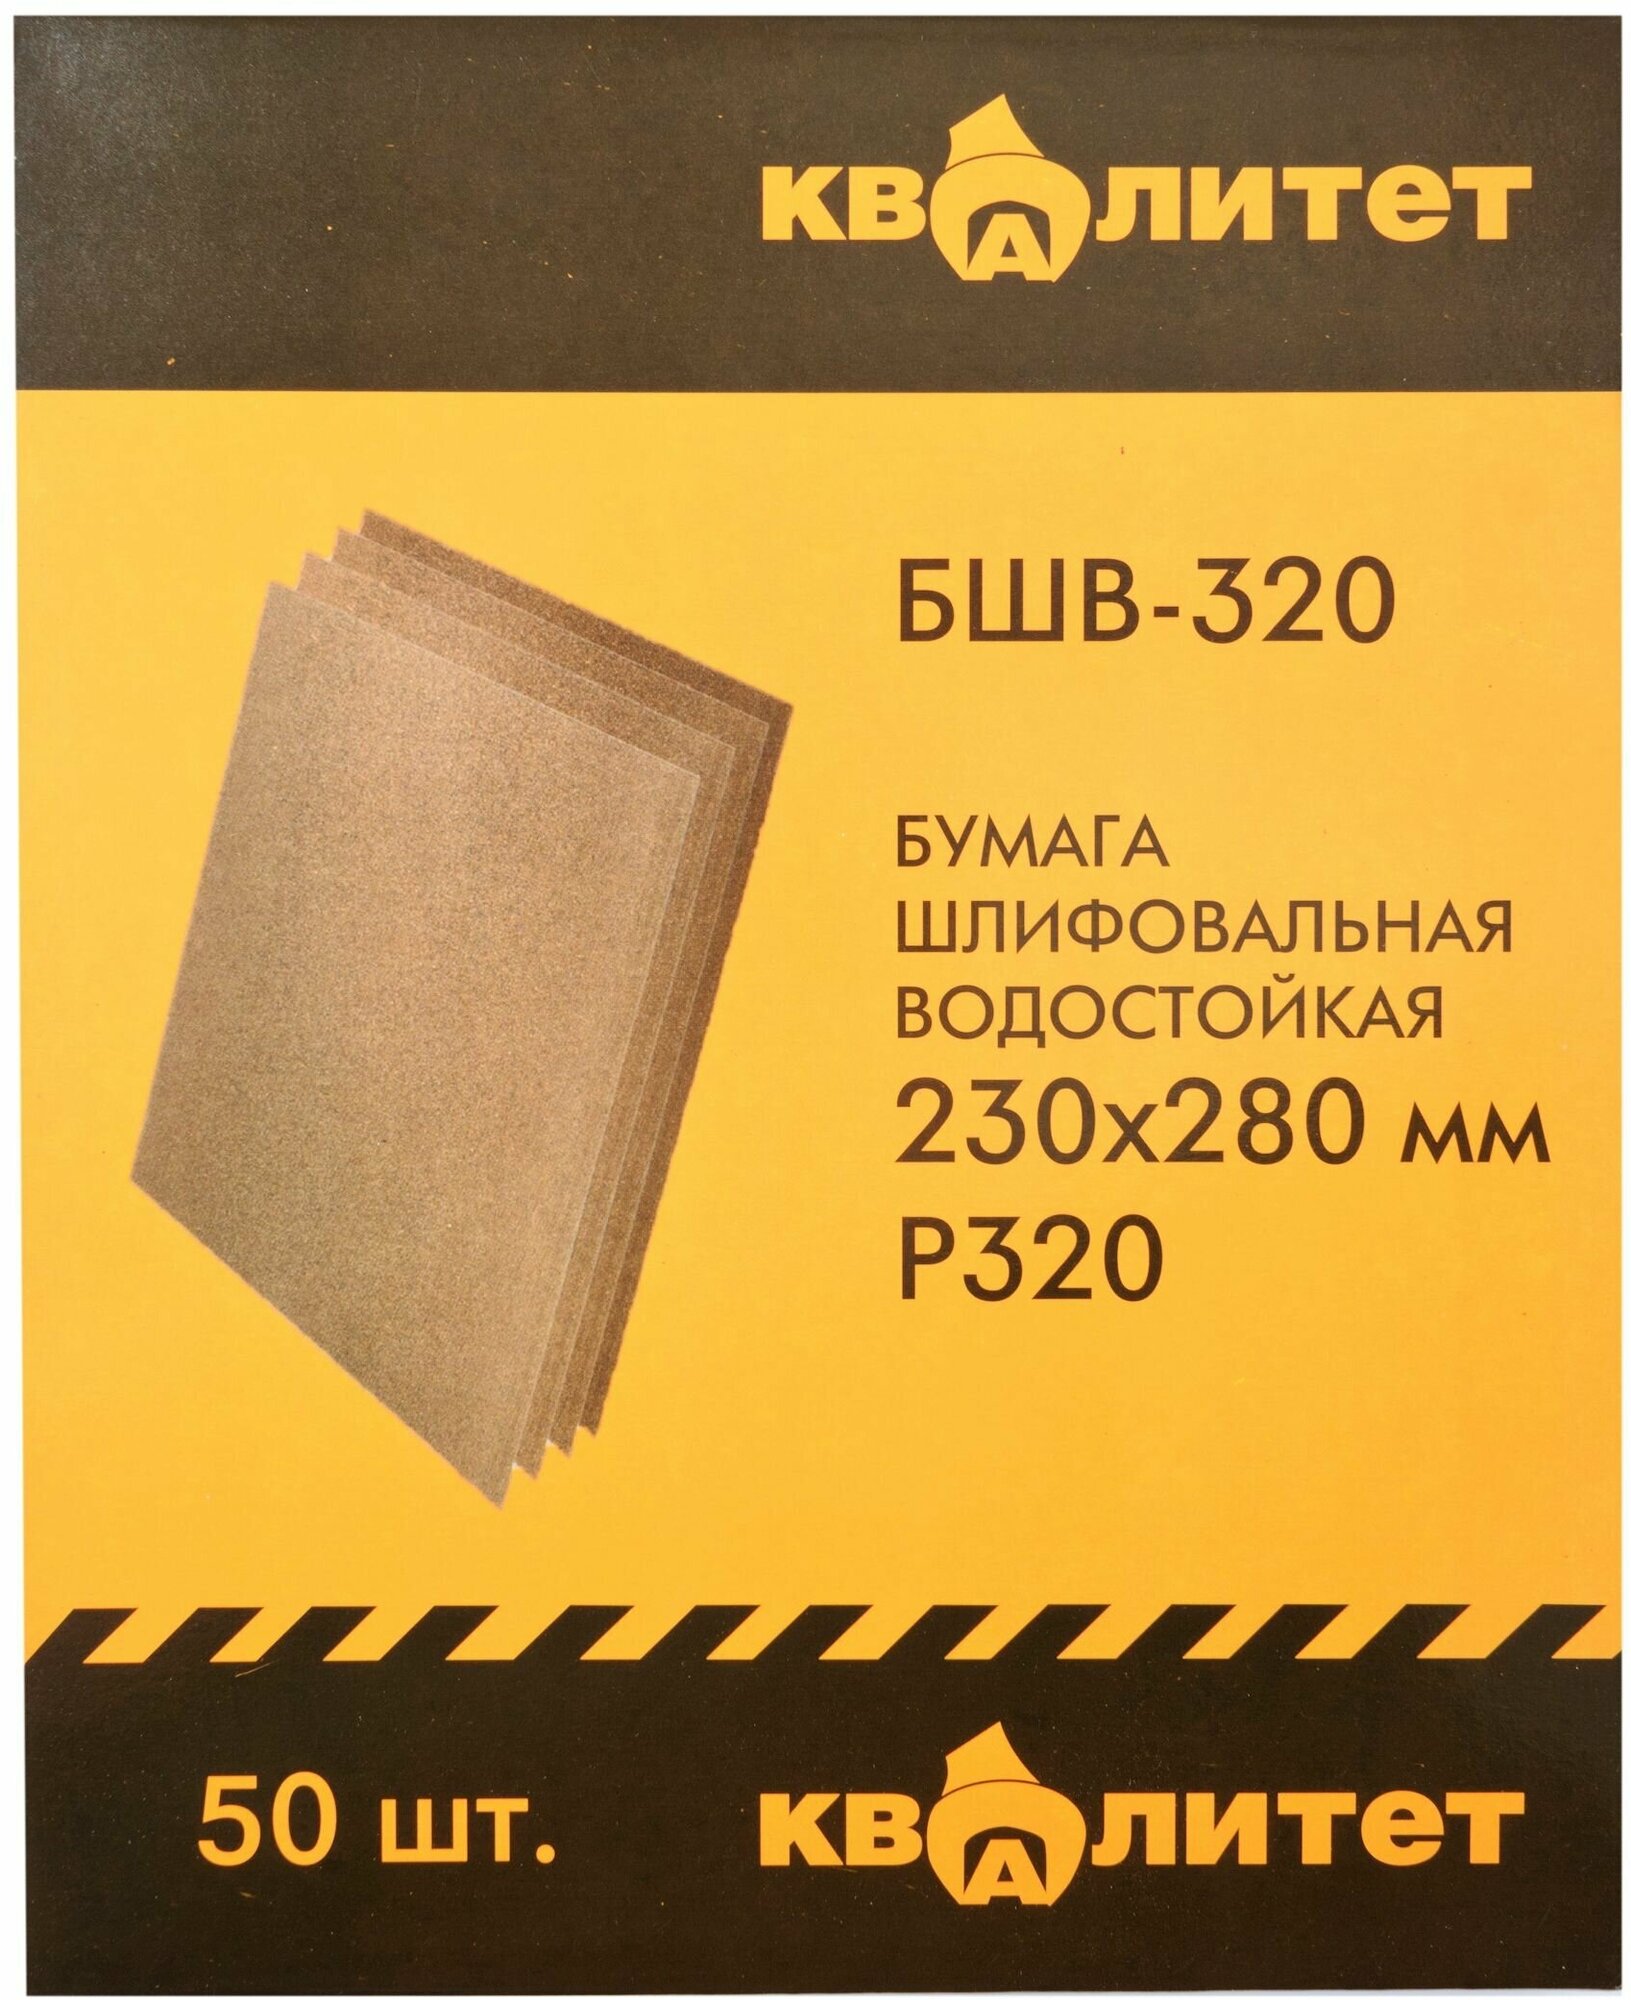 Бумага шлифовальная водостойкая Квалитет БШВ-320